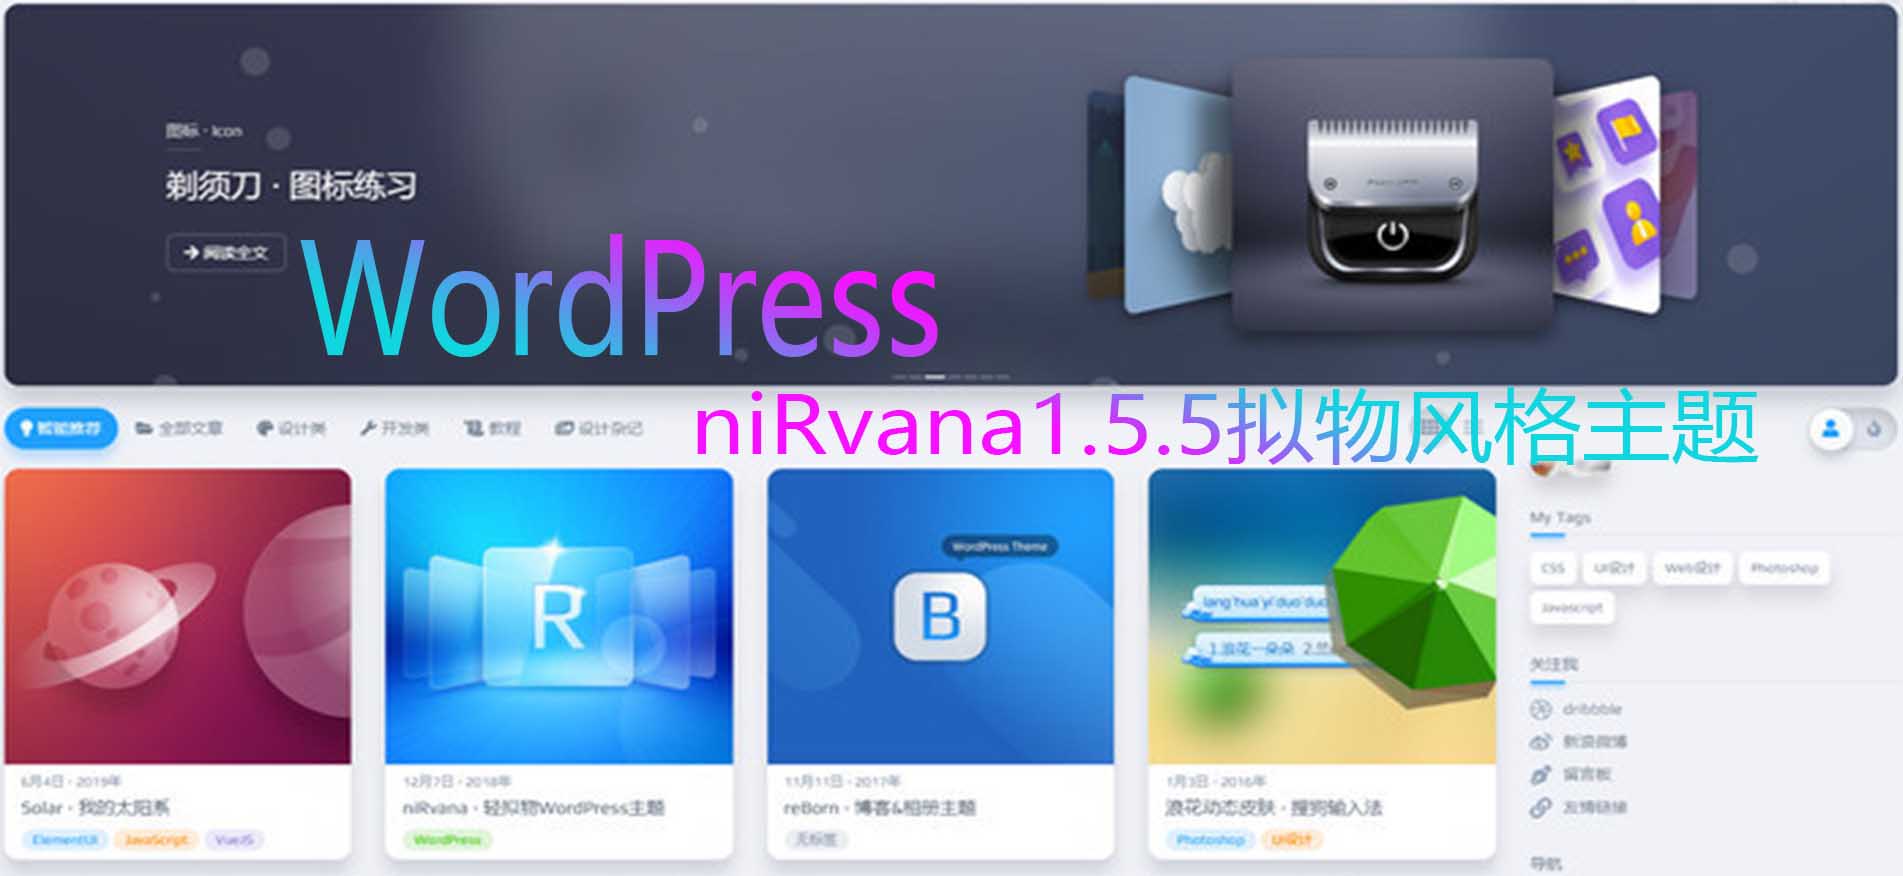 分享一个WordPress响应式主题 niRvana1.5.5拟物风格